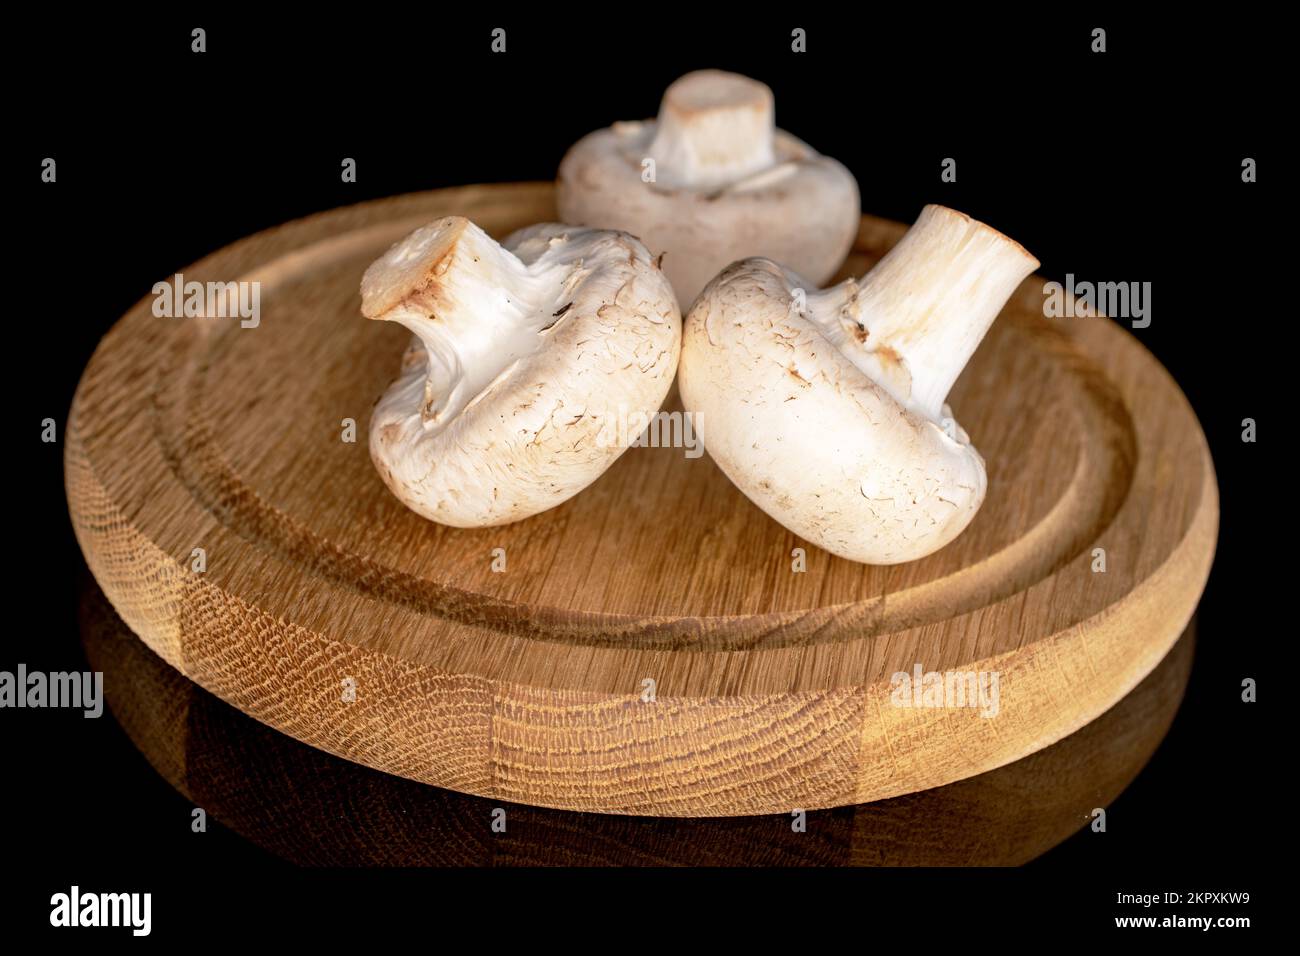 Tre funghi champignon freschi e biologici interi su un vassoio rotondo di bambù, primo piano, su fondo nero. Foto Stock